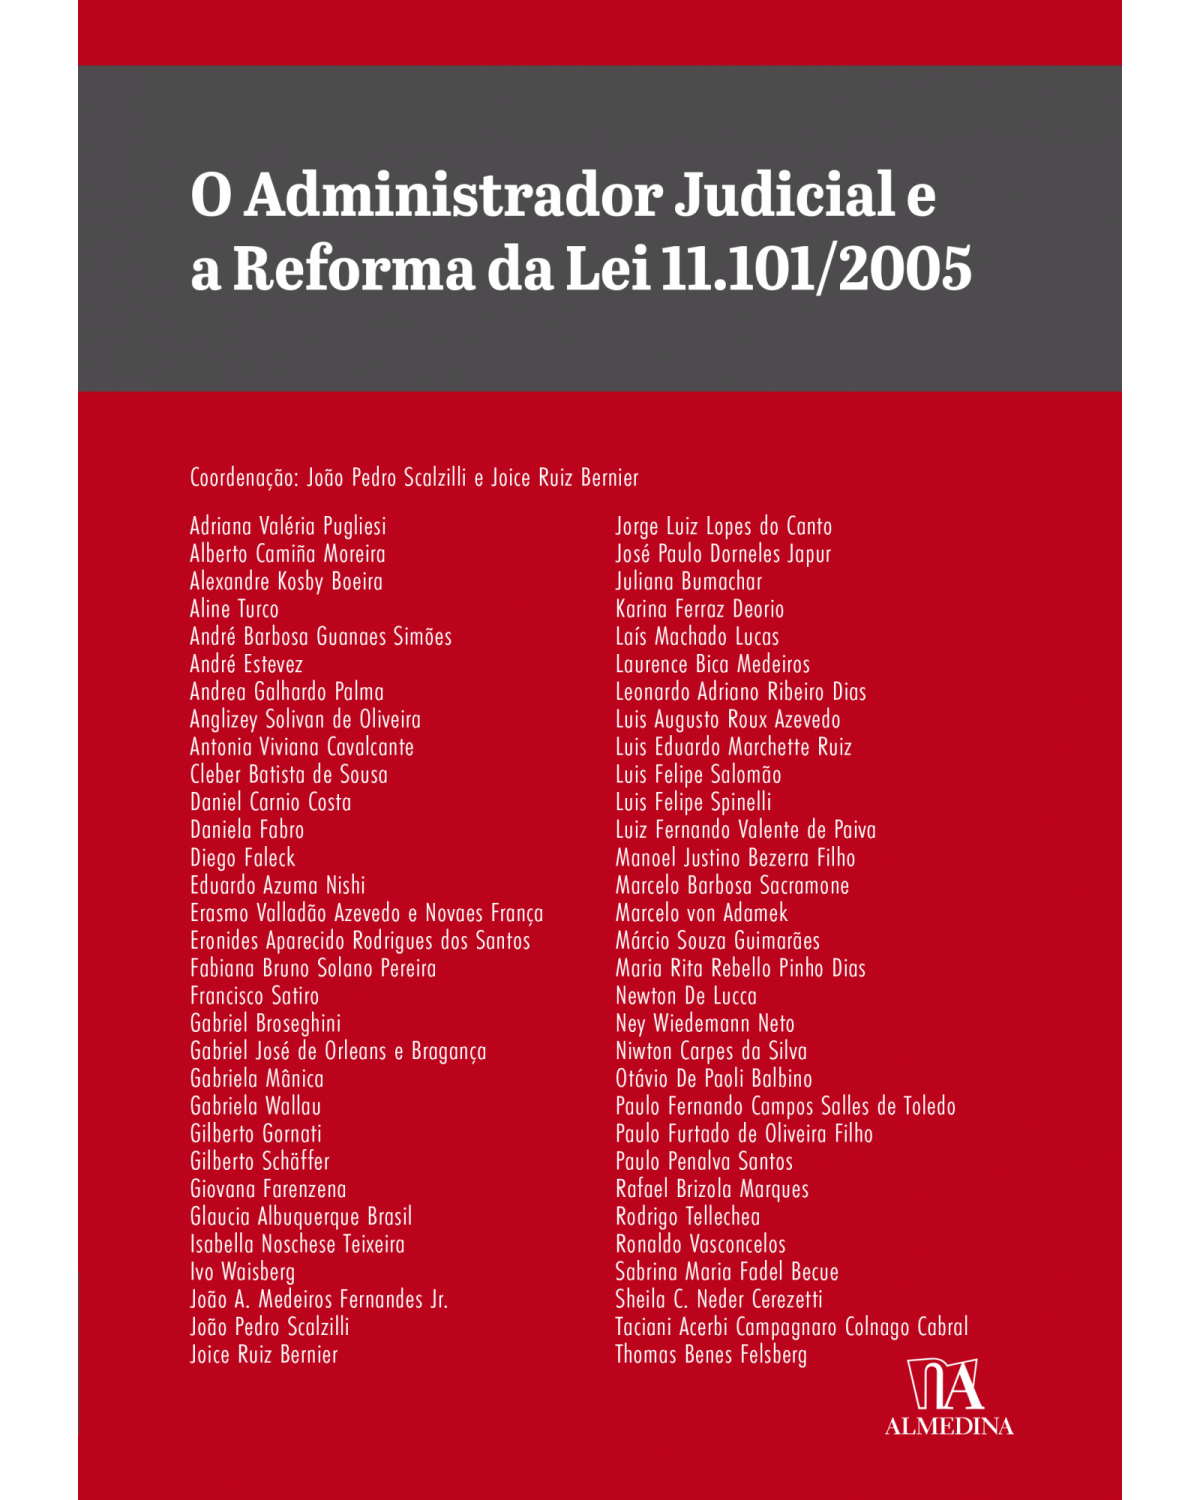 O administrador judicial e a reforma da lei 11.101/2005 - 1ª Edição | 2022